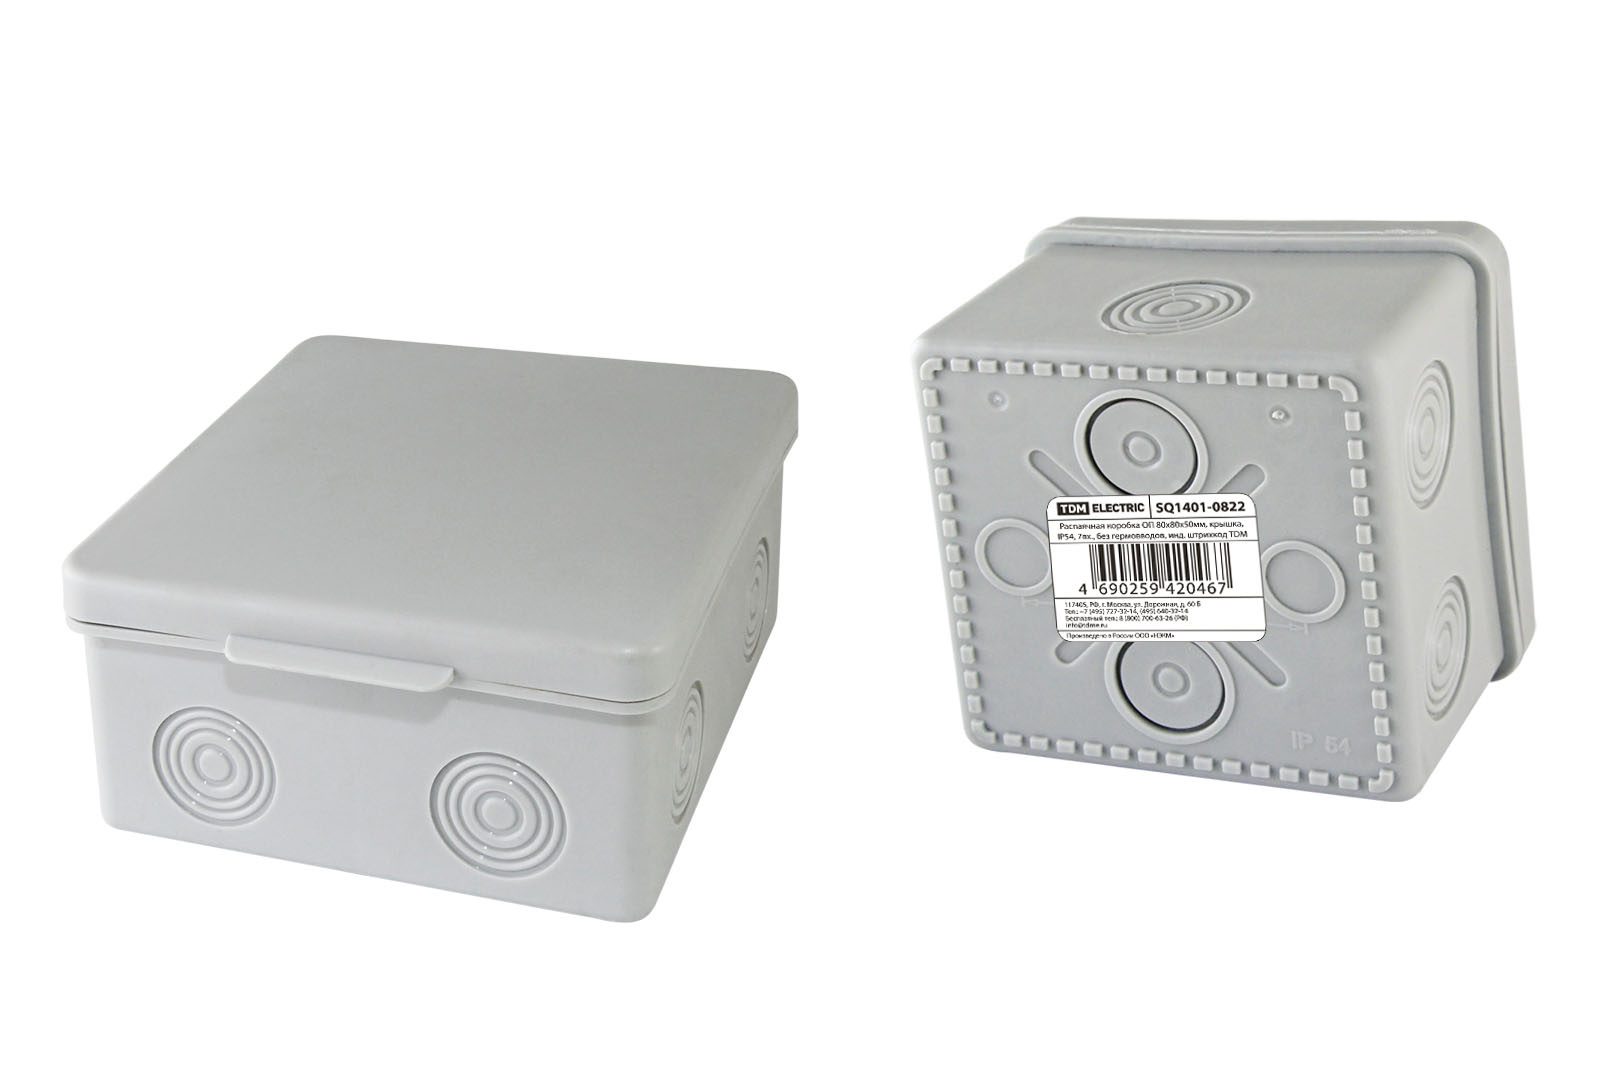 Распаячная коробка 80х80х50мм, 7вх., без гермовводов TDM SQ1401-0822 распаячная коробка для бетона и кирпича bylectrica